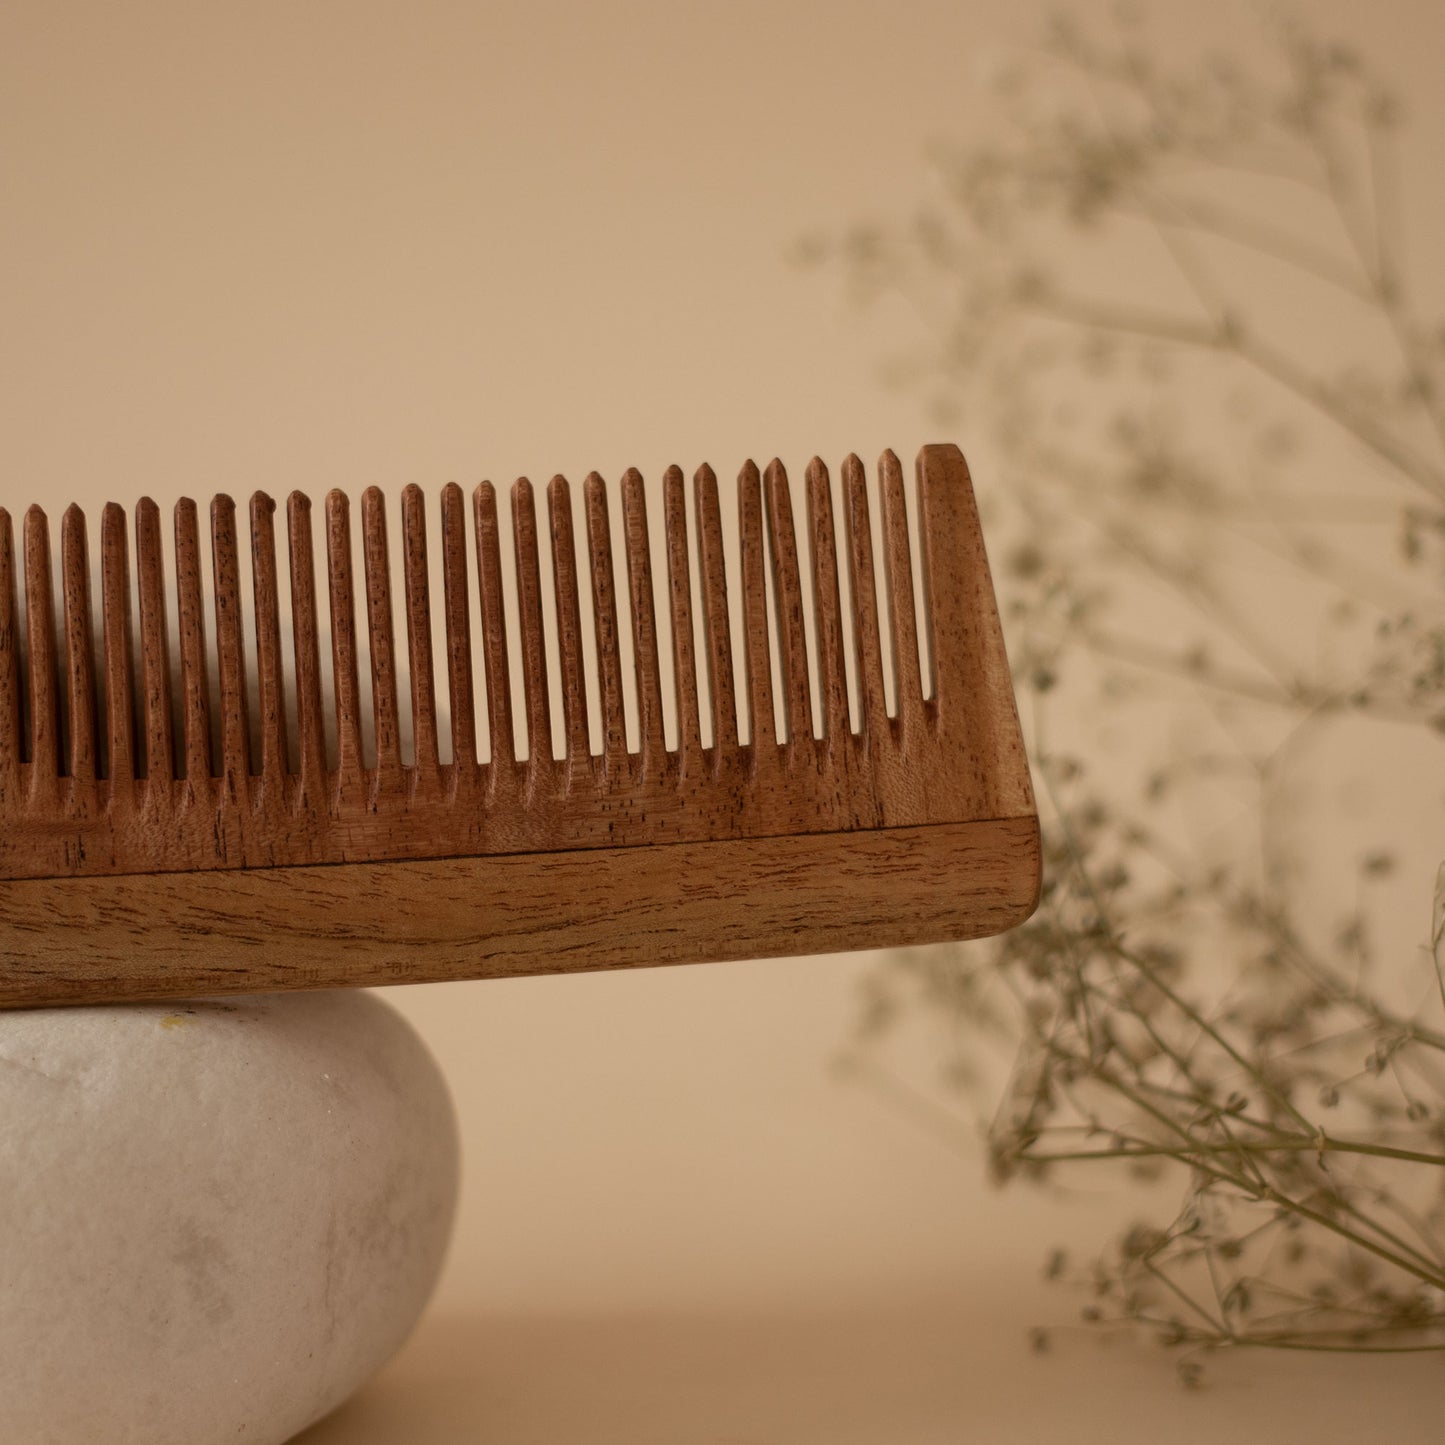 Neem wood handle comb